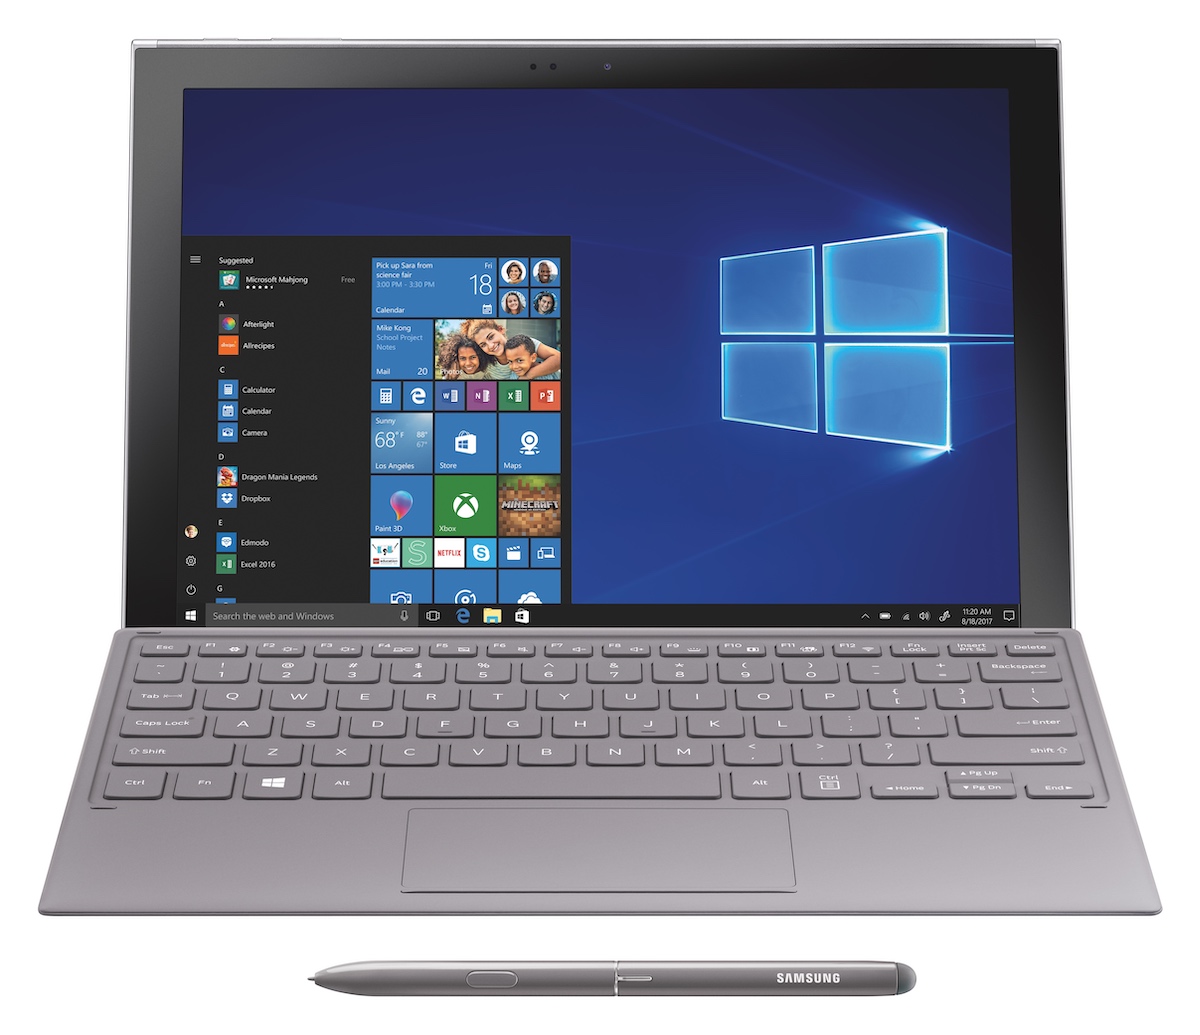 三星推出叫板 Surface Pro 的 2 合 1 电脑 Galaxy Book 2